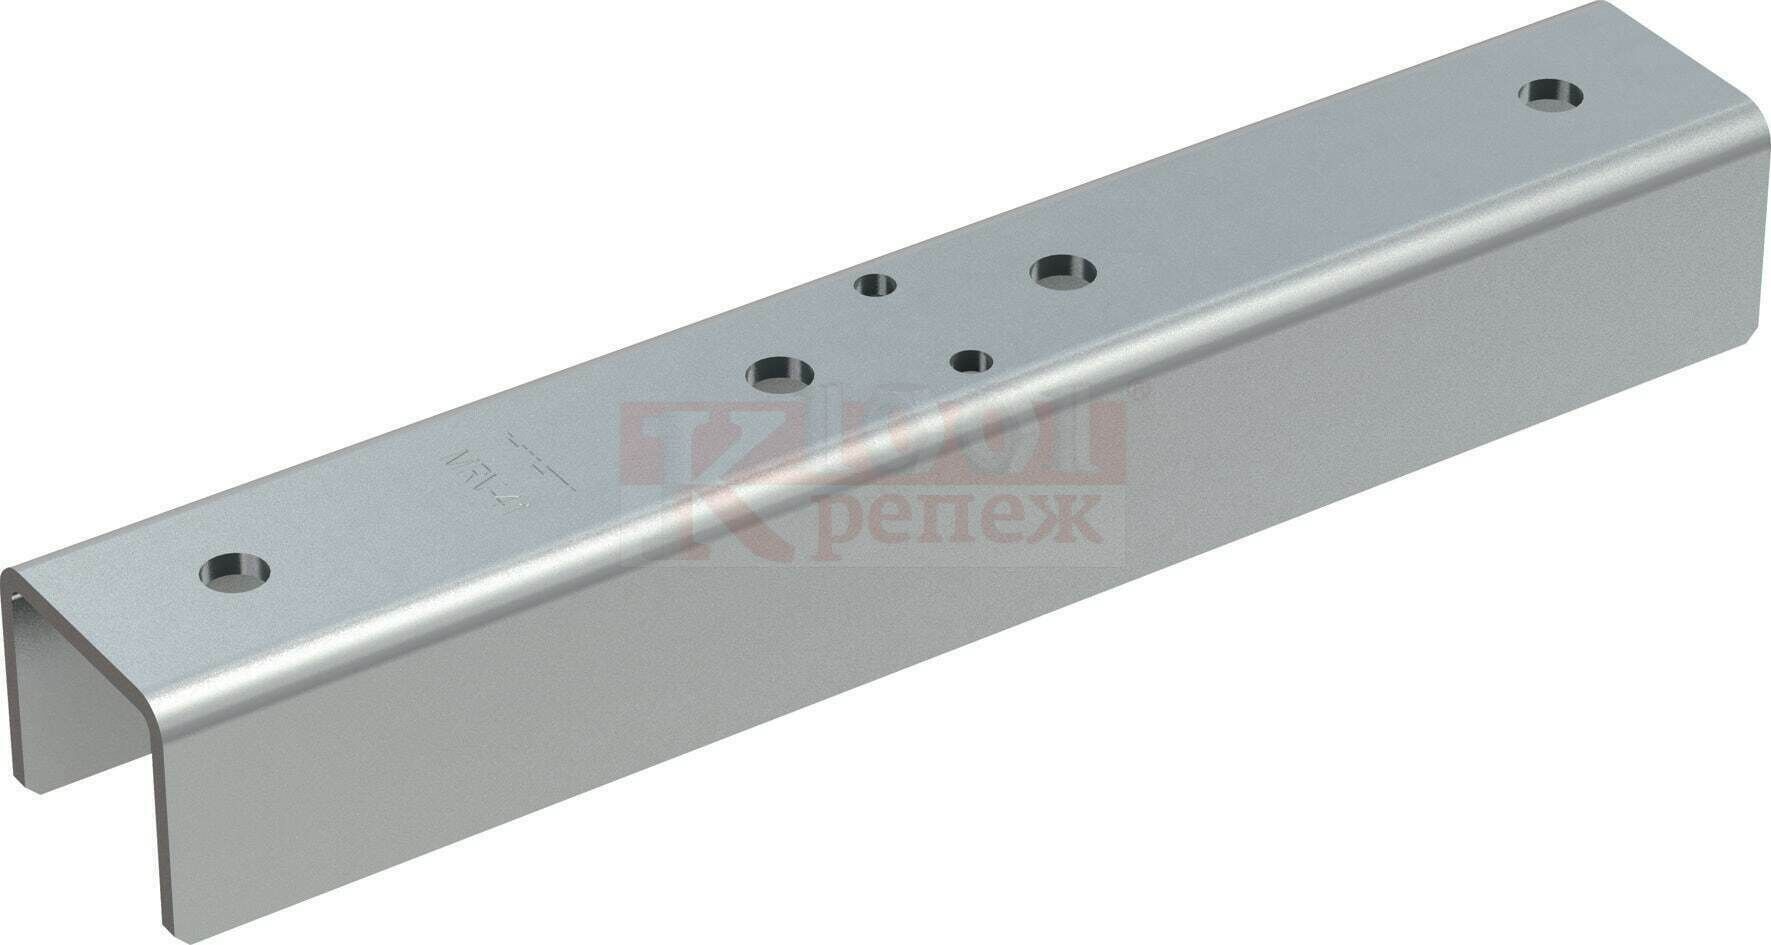 MRV-41 Соединитель HILTI продольный для MR профилей или консолей оц. сталь, 310x45x4 мм